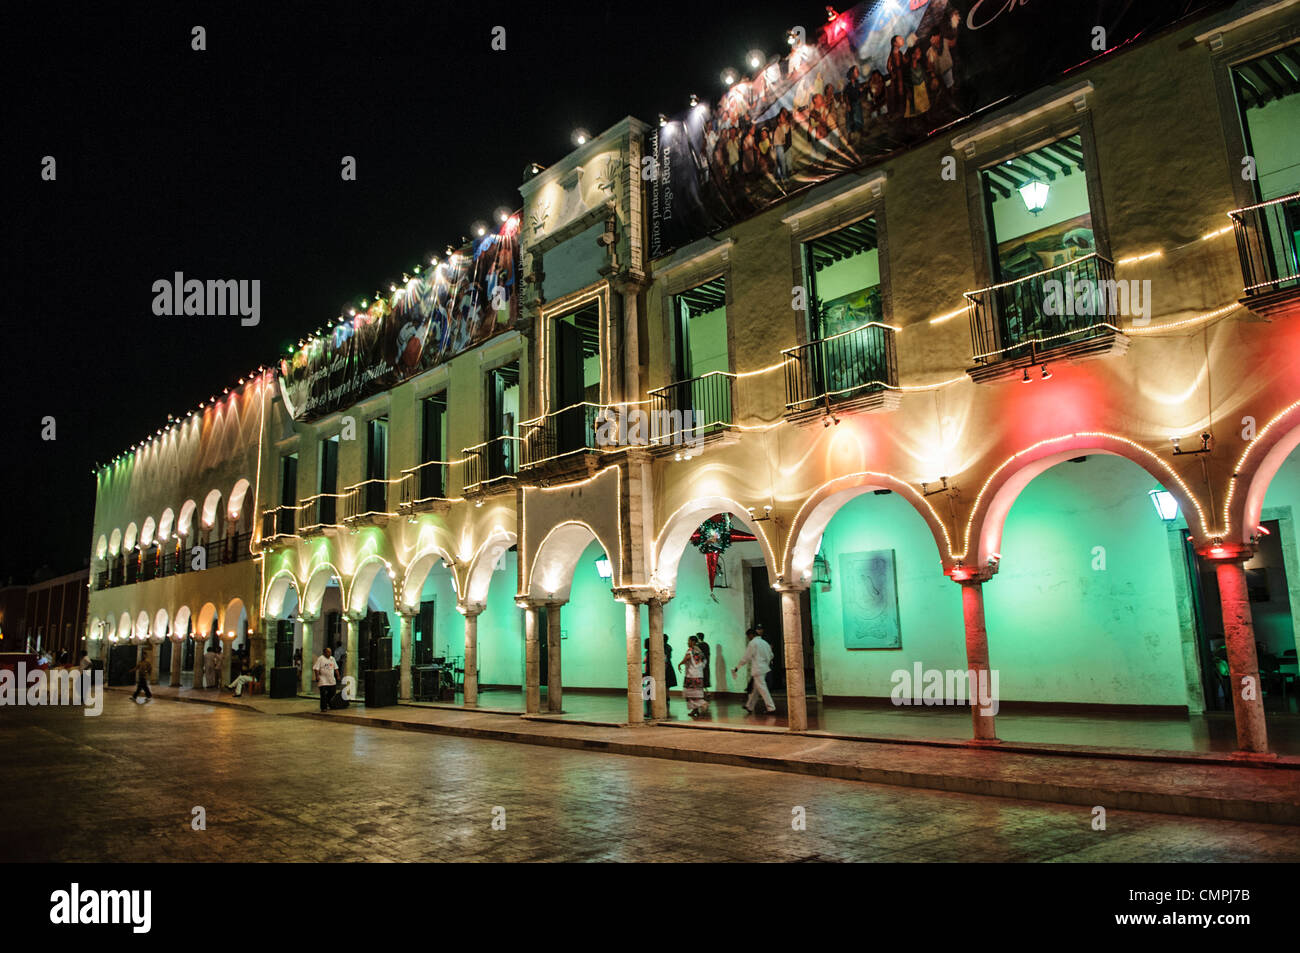 VALLADOLID, Mexique - les lumières de couleurs vives à l'extérieur de l'hôtel de ville de Valladolid, à côté de la place principale. Valladolid est une ville coloniale espagnole au milieu de la péninsule du Yucatan. Banque D'Images